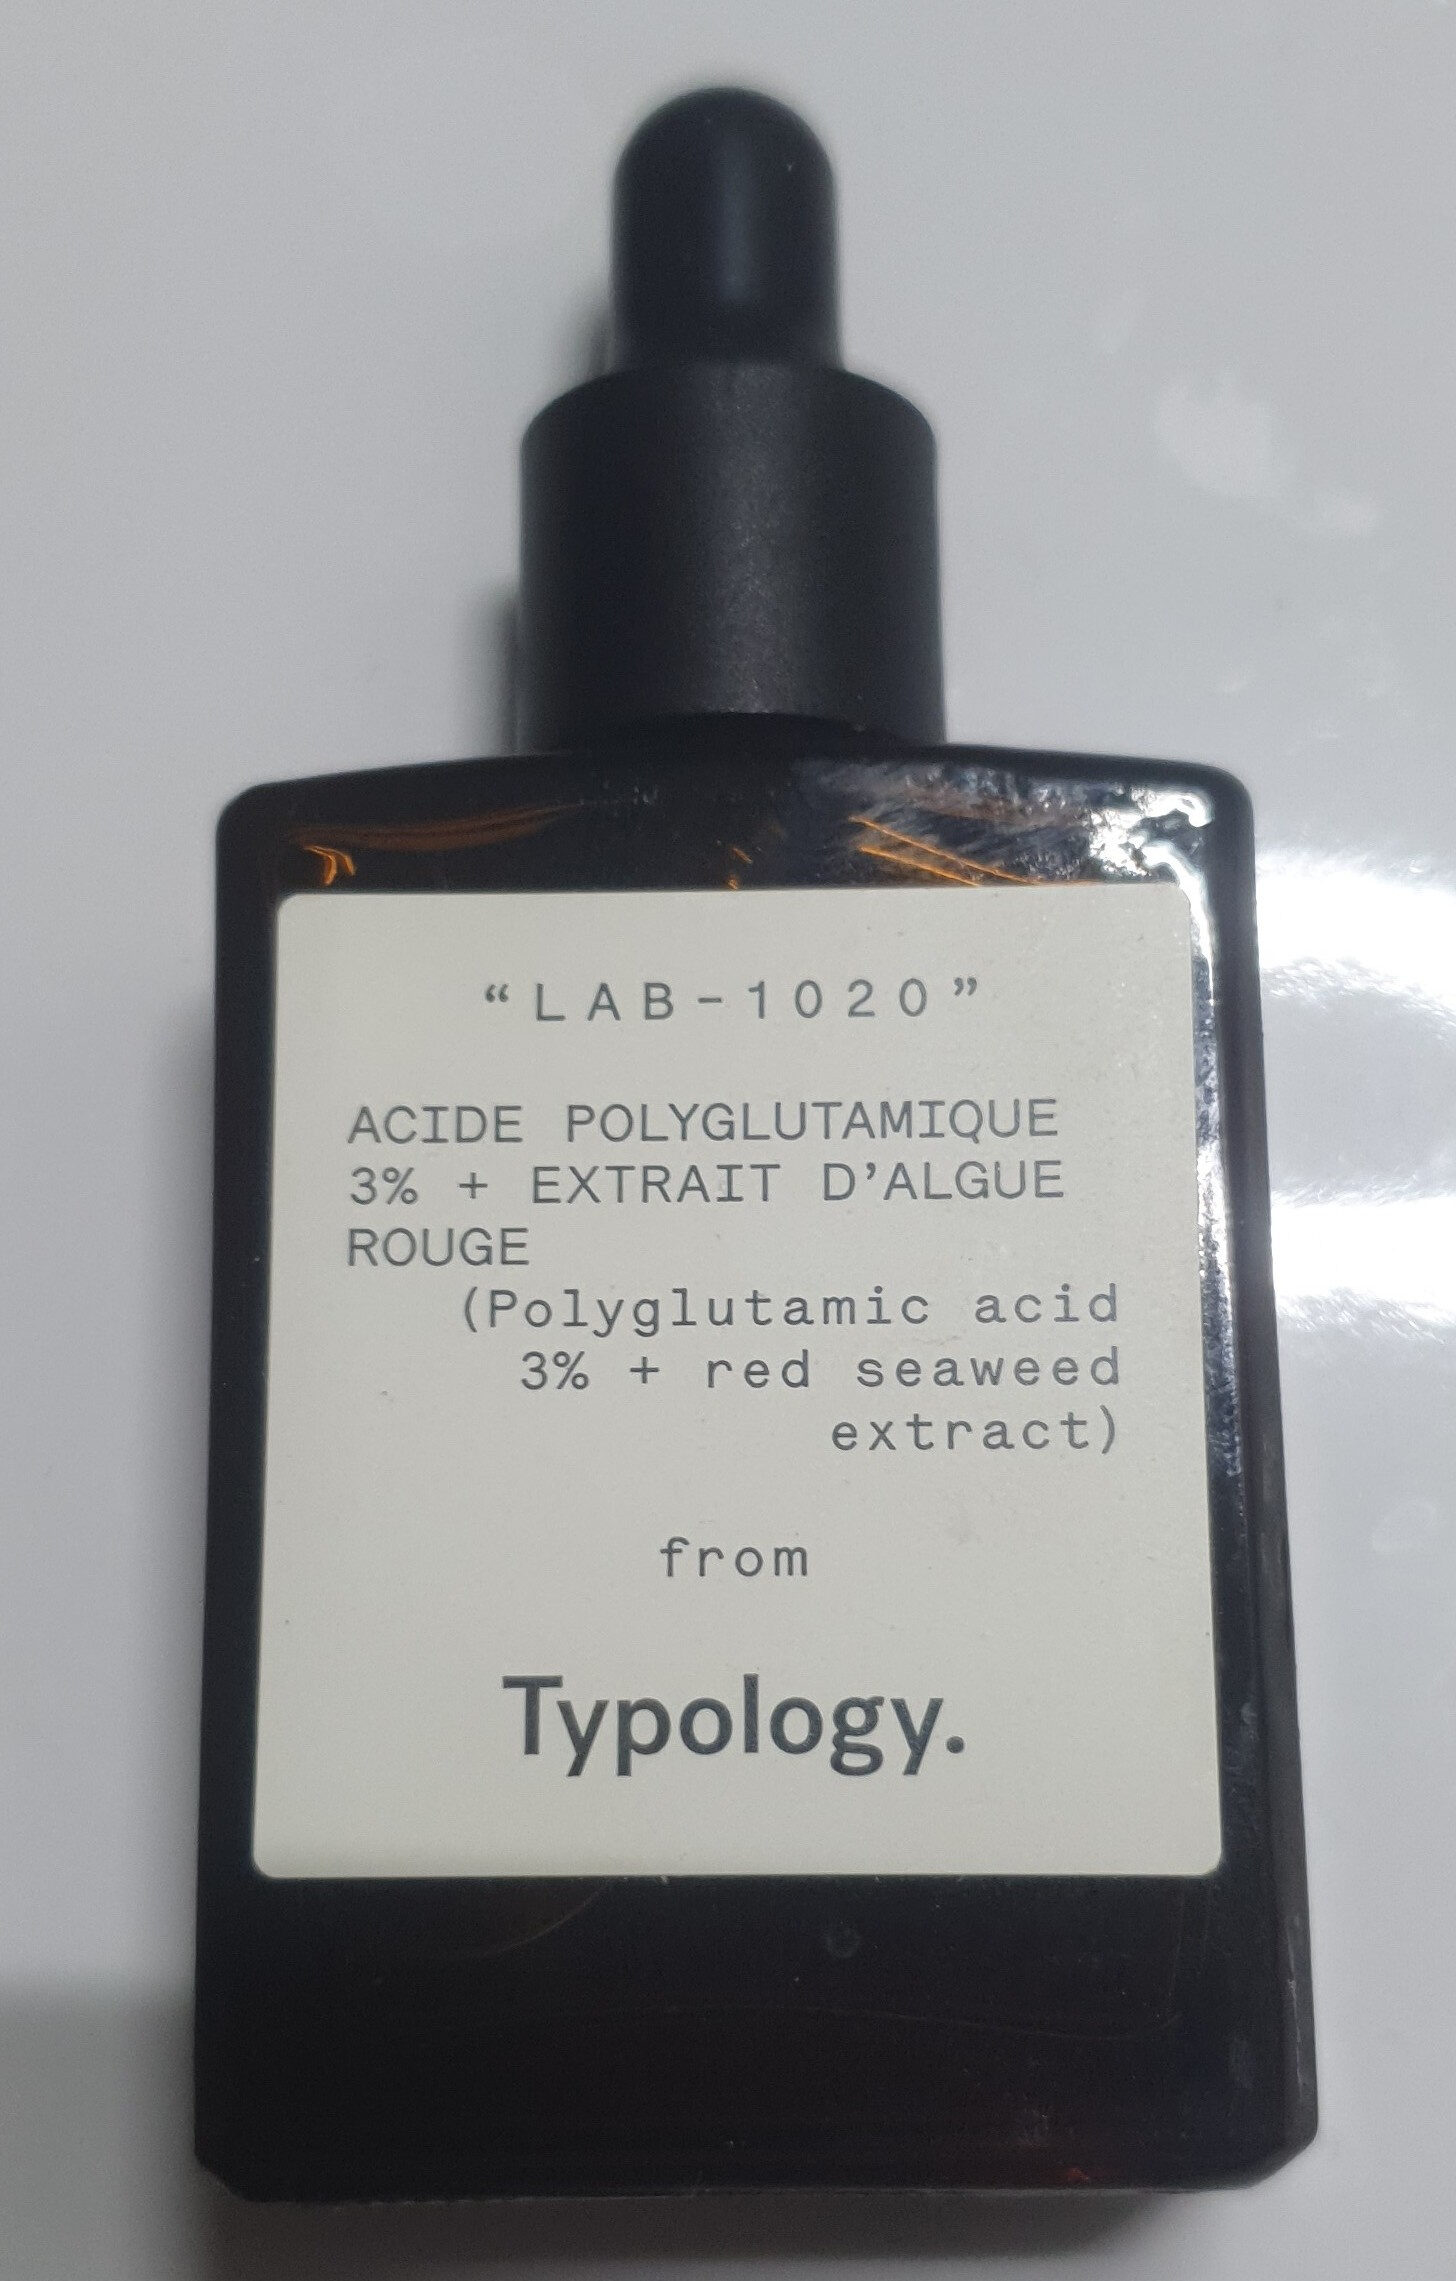 Acide polyglutamique 3% + Extrait d'algue rouge - Product - en